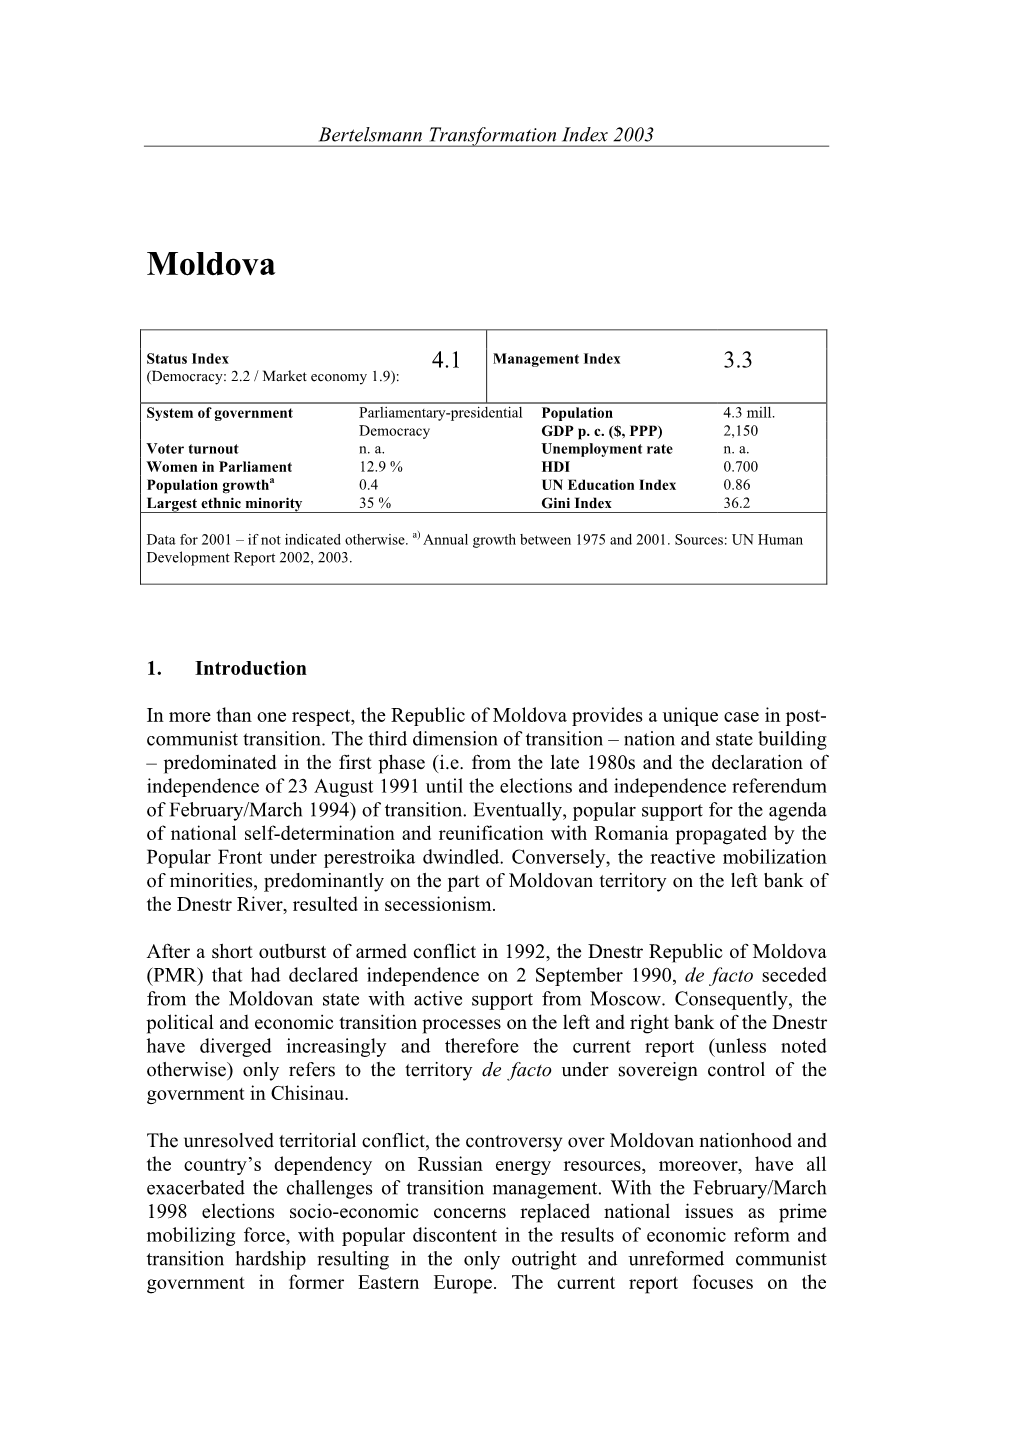 Moldova Country Report BTI 2003